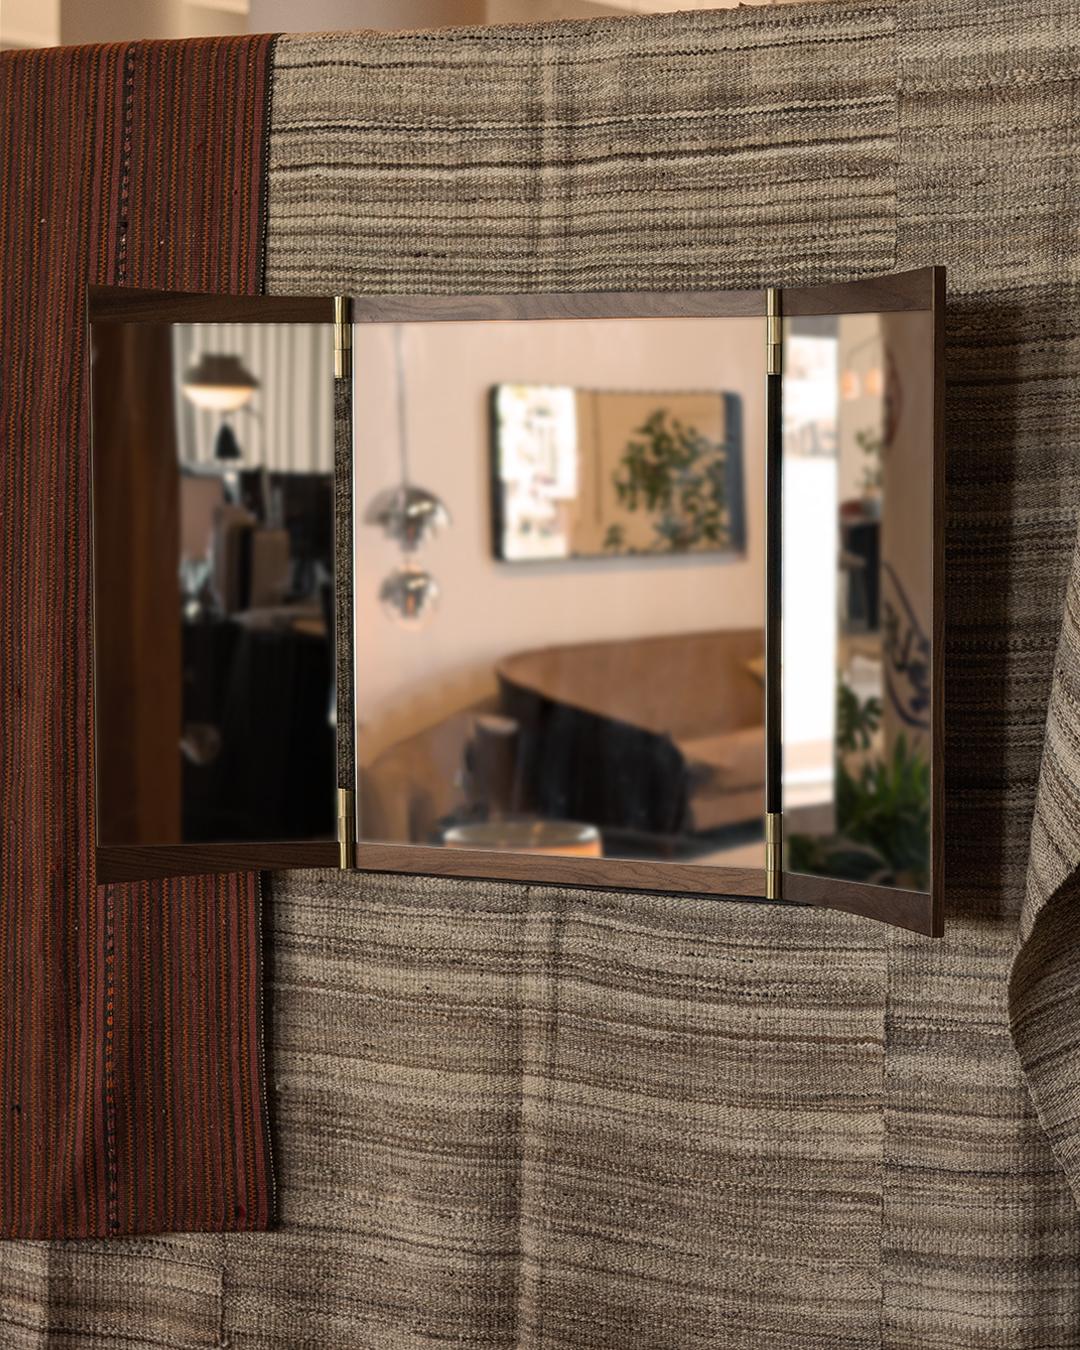 GamFratesi Dreiteiliger Kosmetikspiegel für GUBI.

Diese neue Kollektion von Wandspiegeln erfindet den Kosmetikspiegel für zeitgenössische Interieurs auf geniale Weise neu. Der aus Nussbaum und Messing gefertigte Vanity-Spiegel verkörpert die